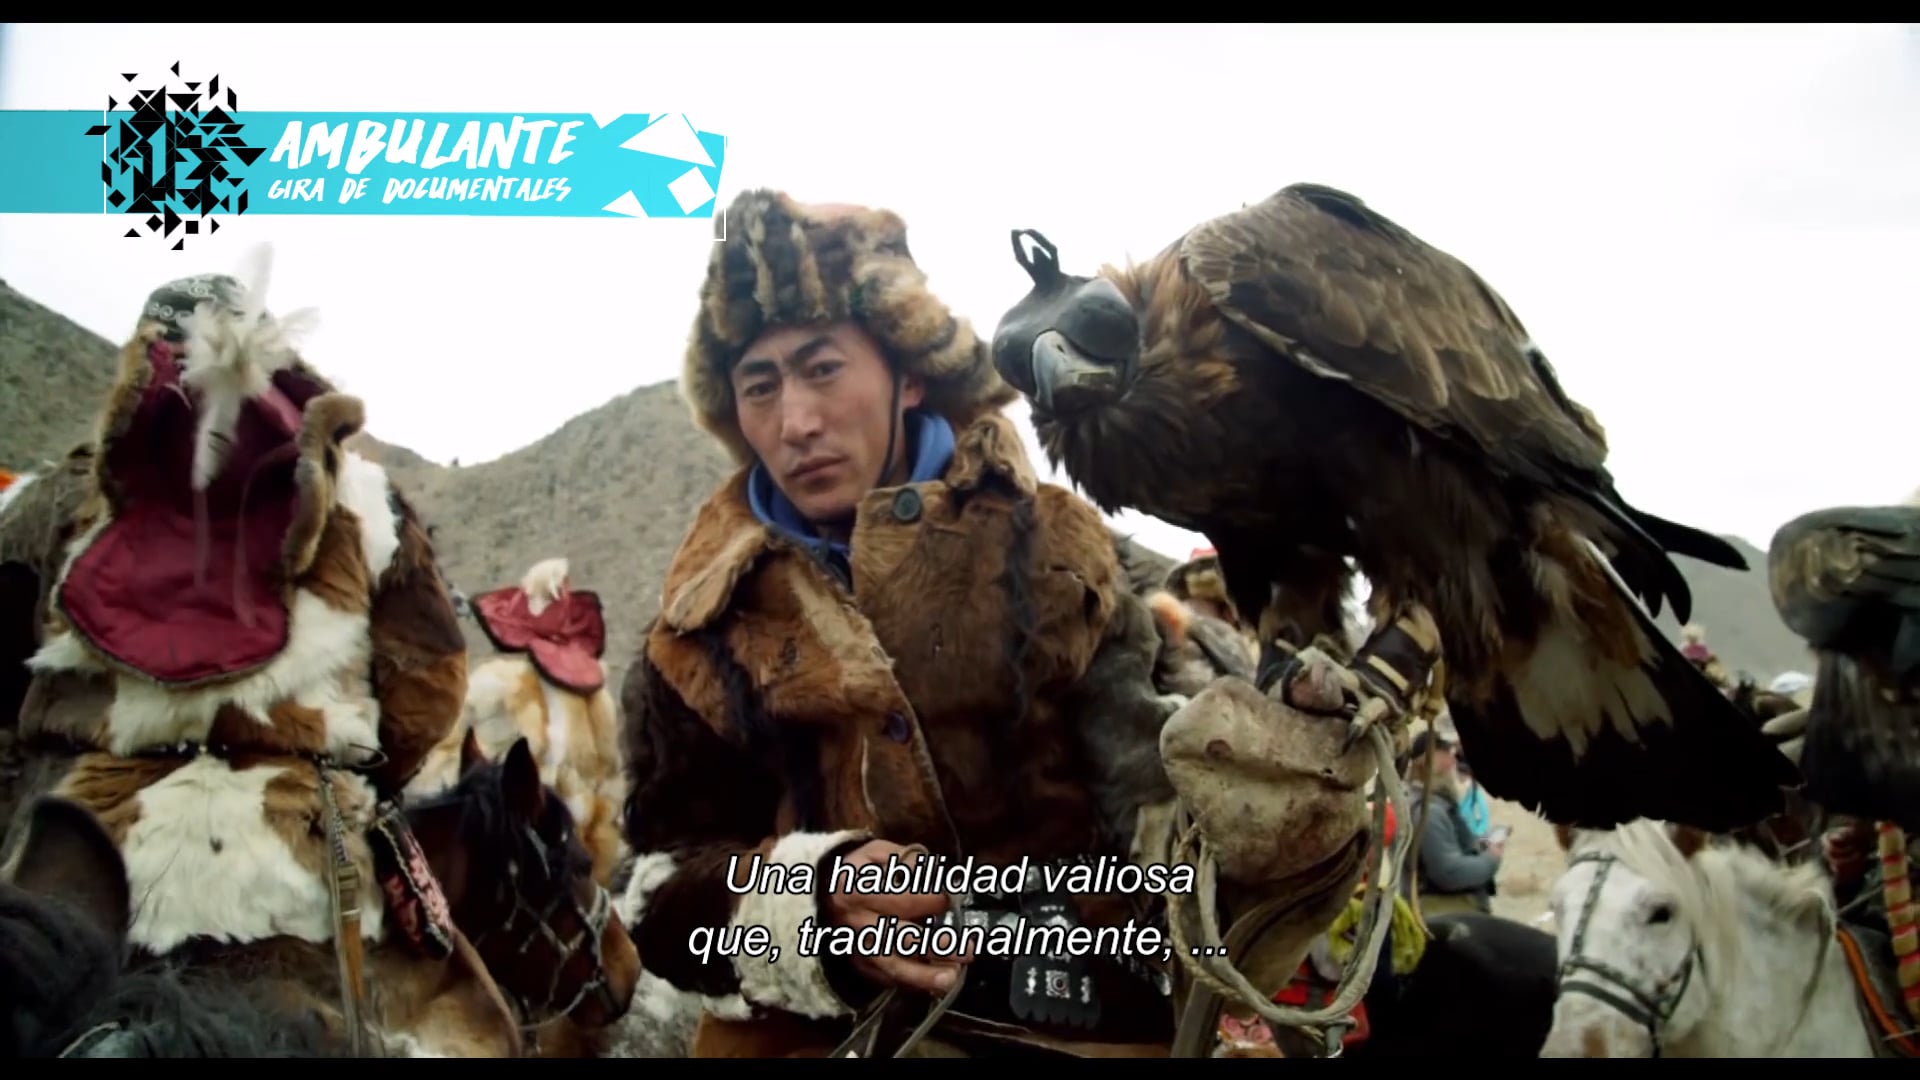 Tráiler “La cazadora de águilas” (Dir. Otto Bell) on Vimeo